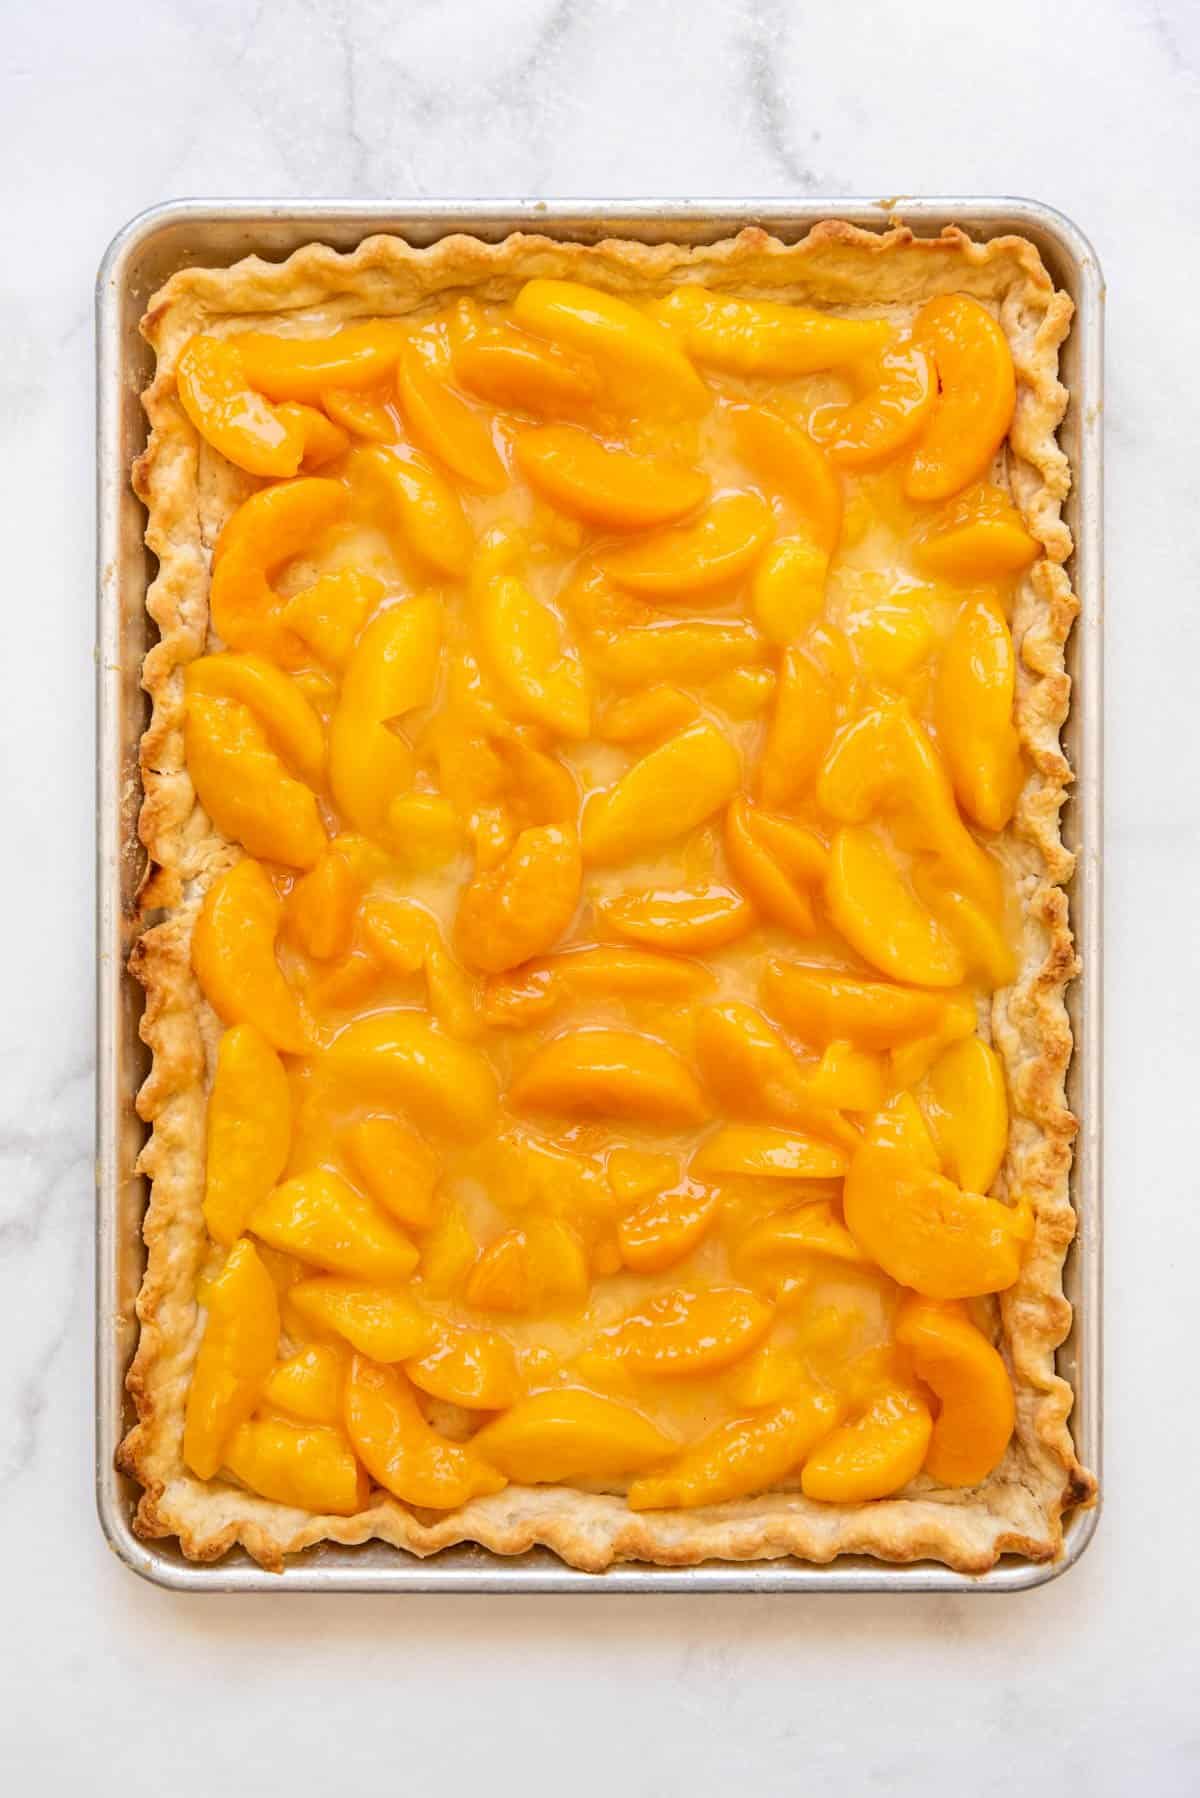 Peach pie filling spread on a baked pie crust in a baking sheet.